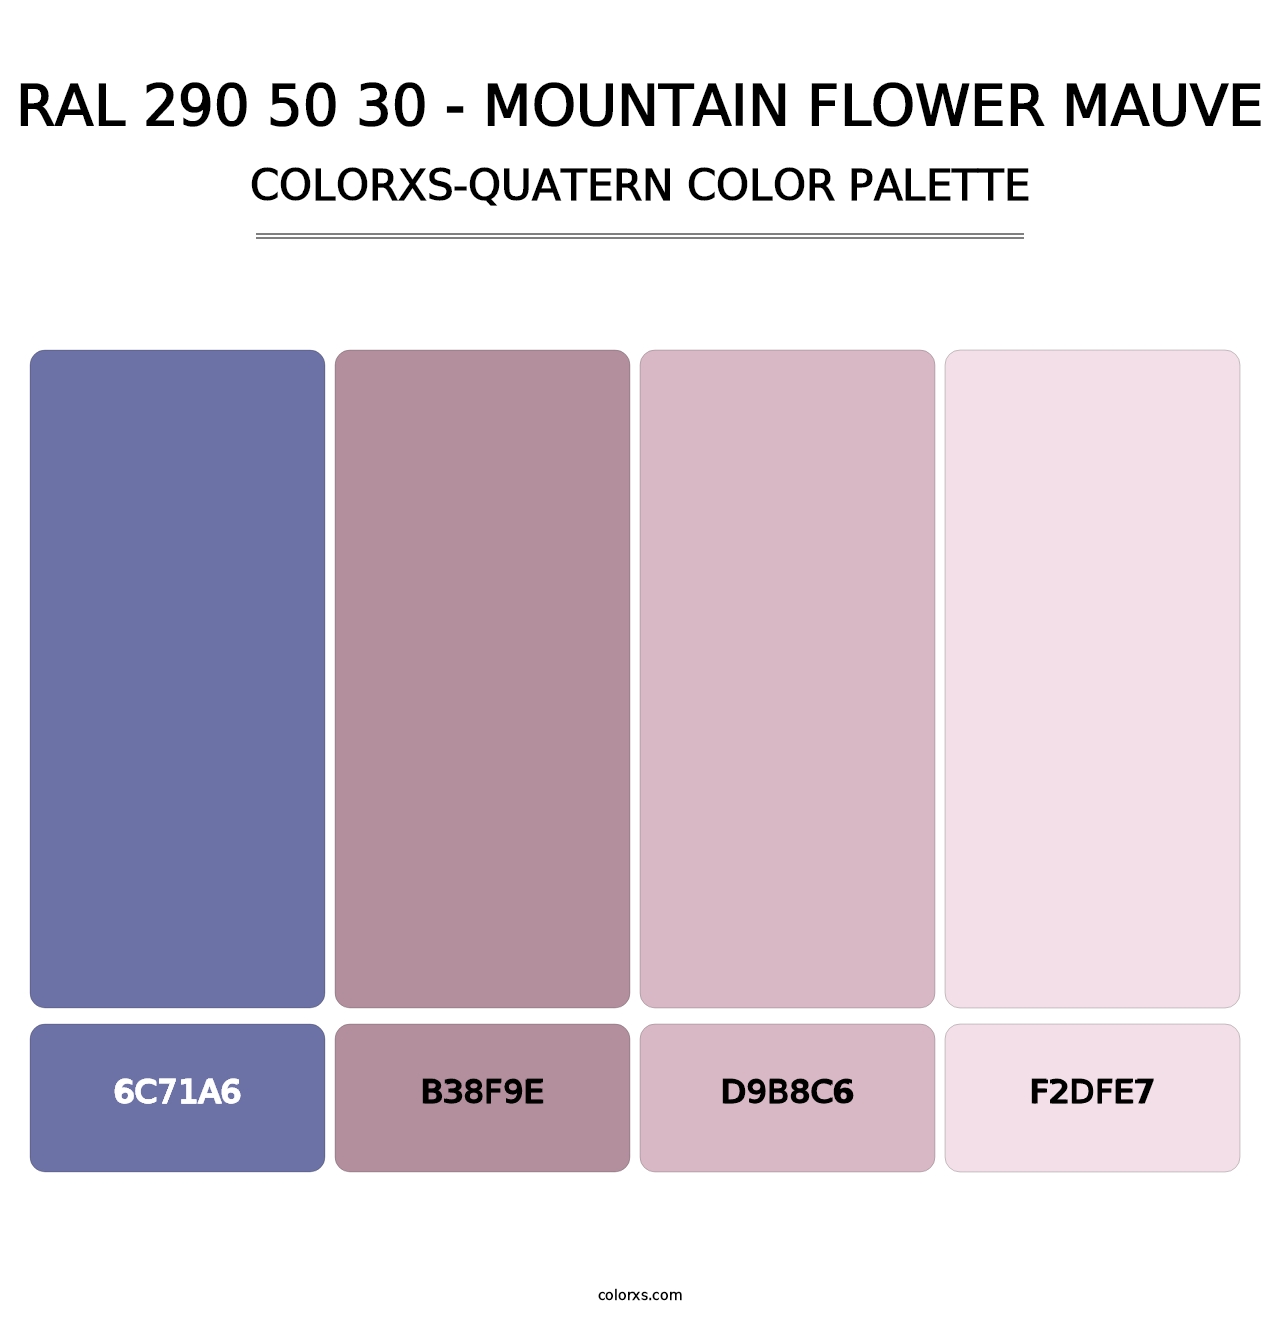 RAL 290 50 30 - Mountain Flower Mauve - Colorxs Quatern Palette